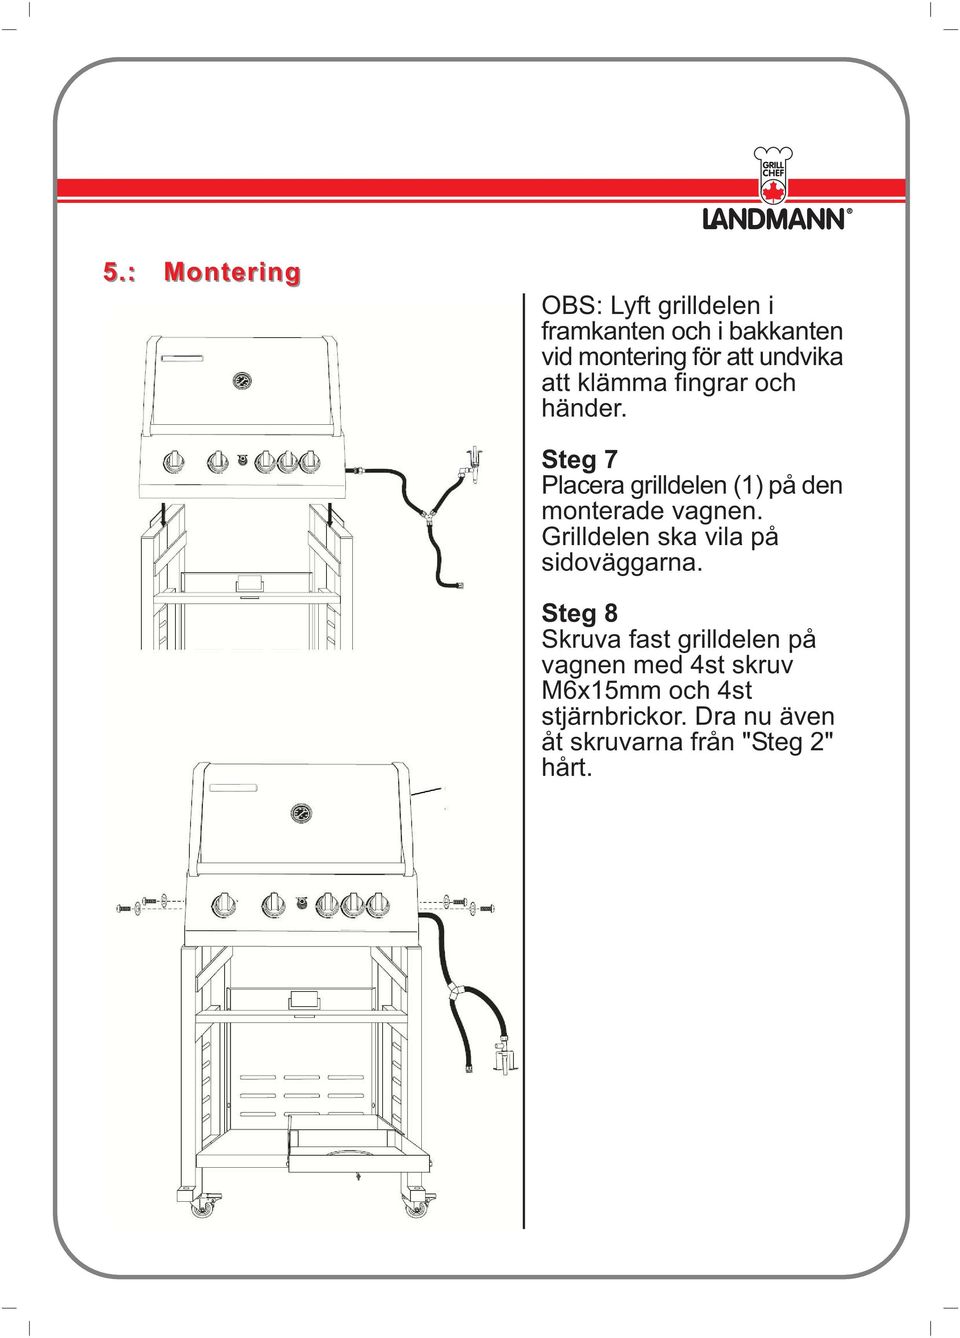 Steg 7 Placera grilldelen (1) på den monterade vagnen.